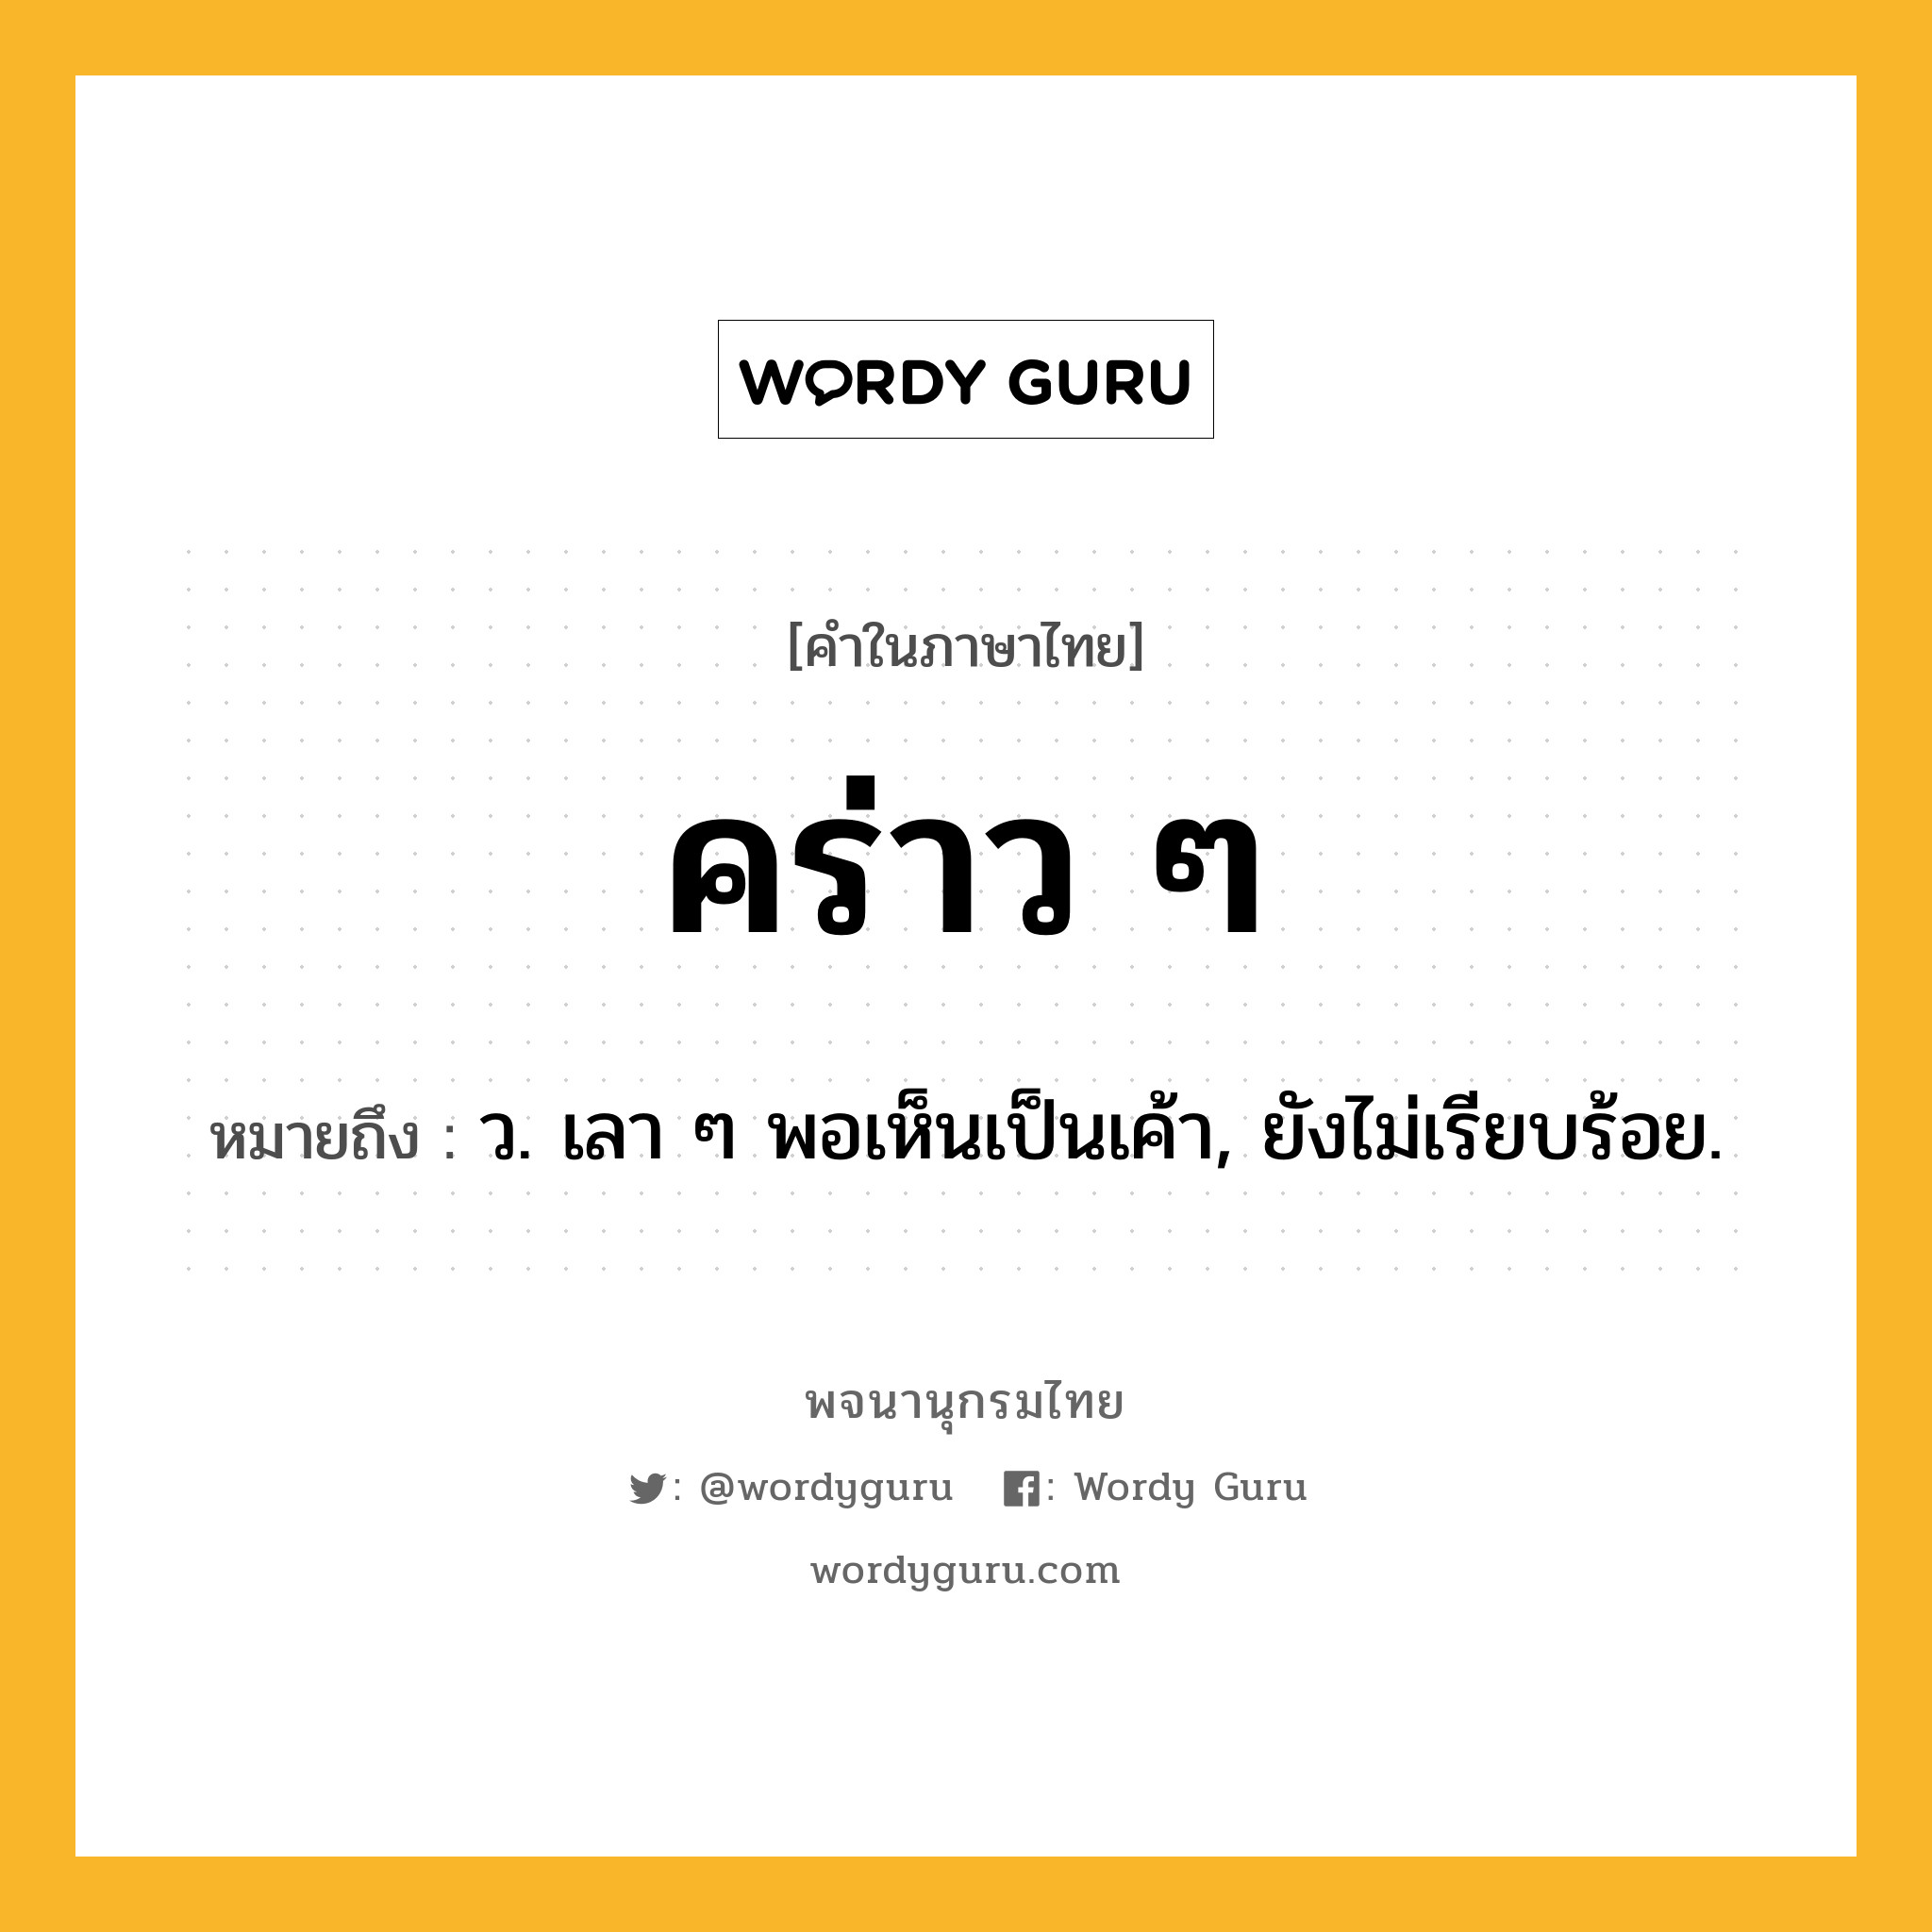 คร่าว ๆ หมายถึงอะไร?, คำในภาษาไทย คร่าว ๆ หมายถึง ว. เลา ๆ พอเห็นเป็นเค้า, ยังไม่เรียบร้อย.